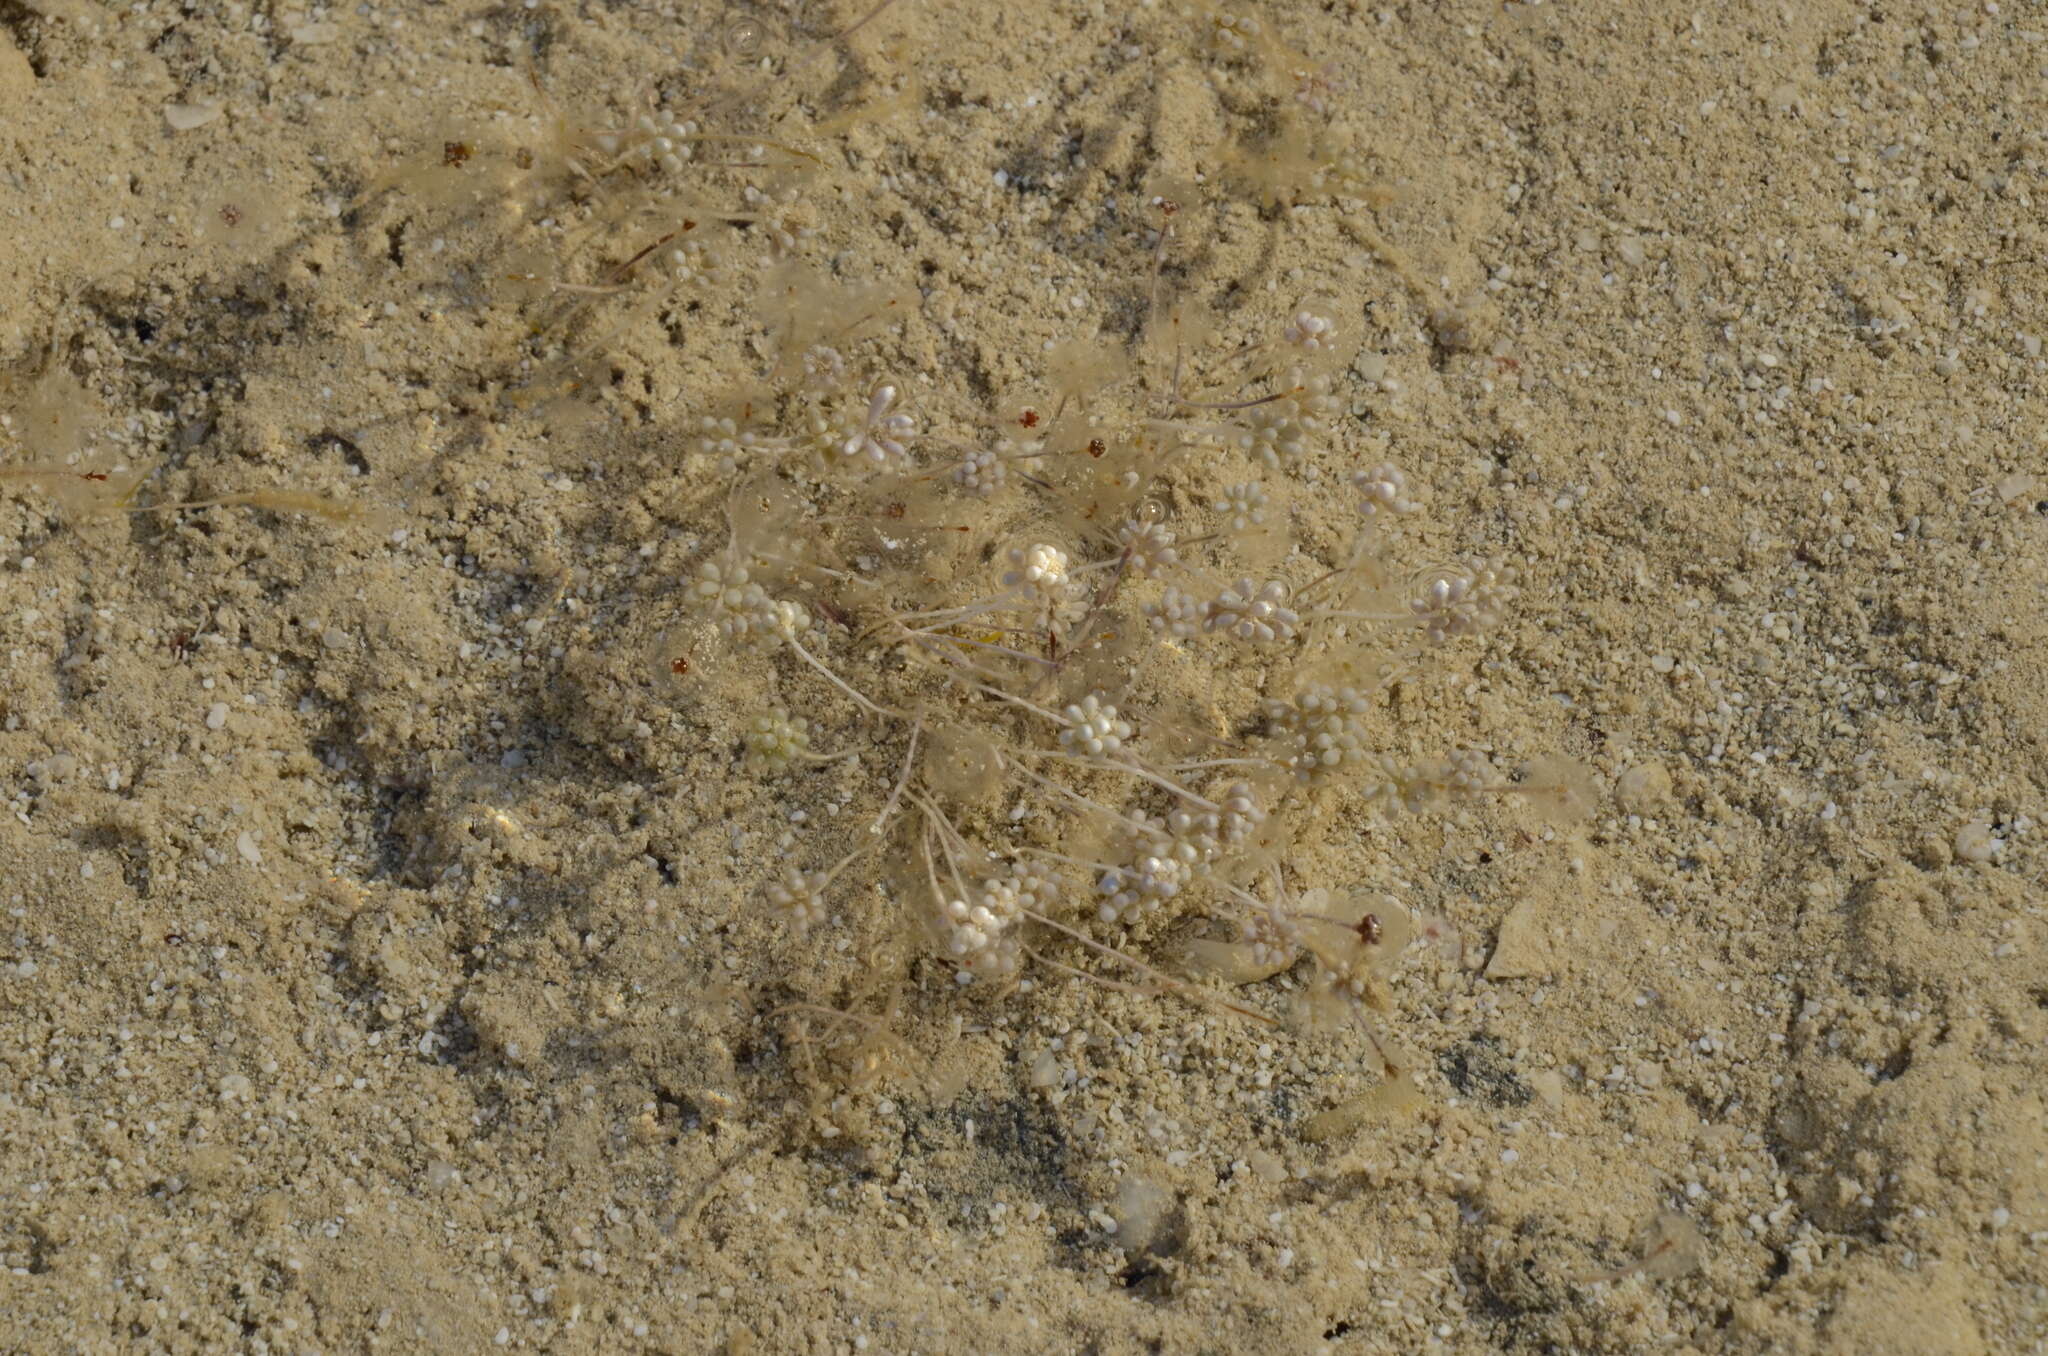 Image of Acetabularia peniculus